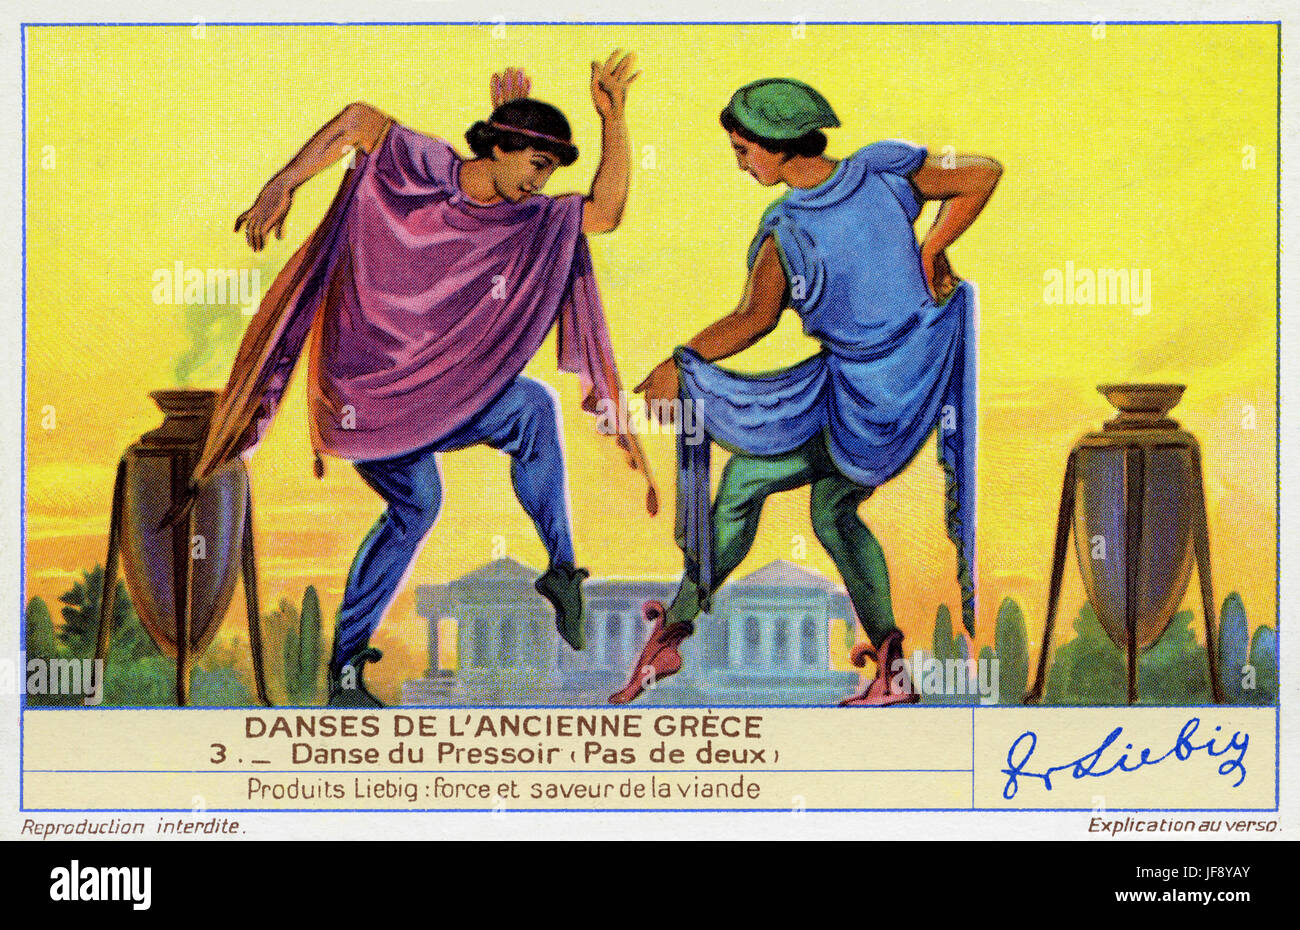 La danza del vino premere (pas de deux). Danze della Grecia antica. Liebig collezionisti card, 1942 Foto Stock